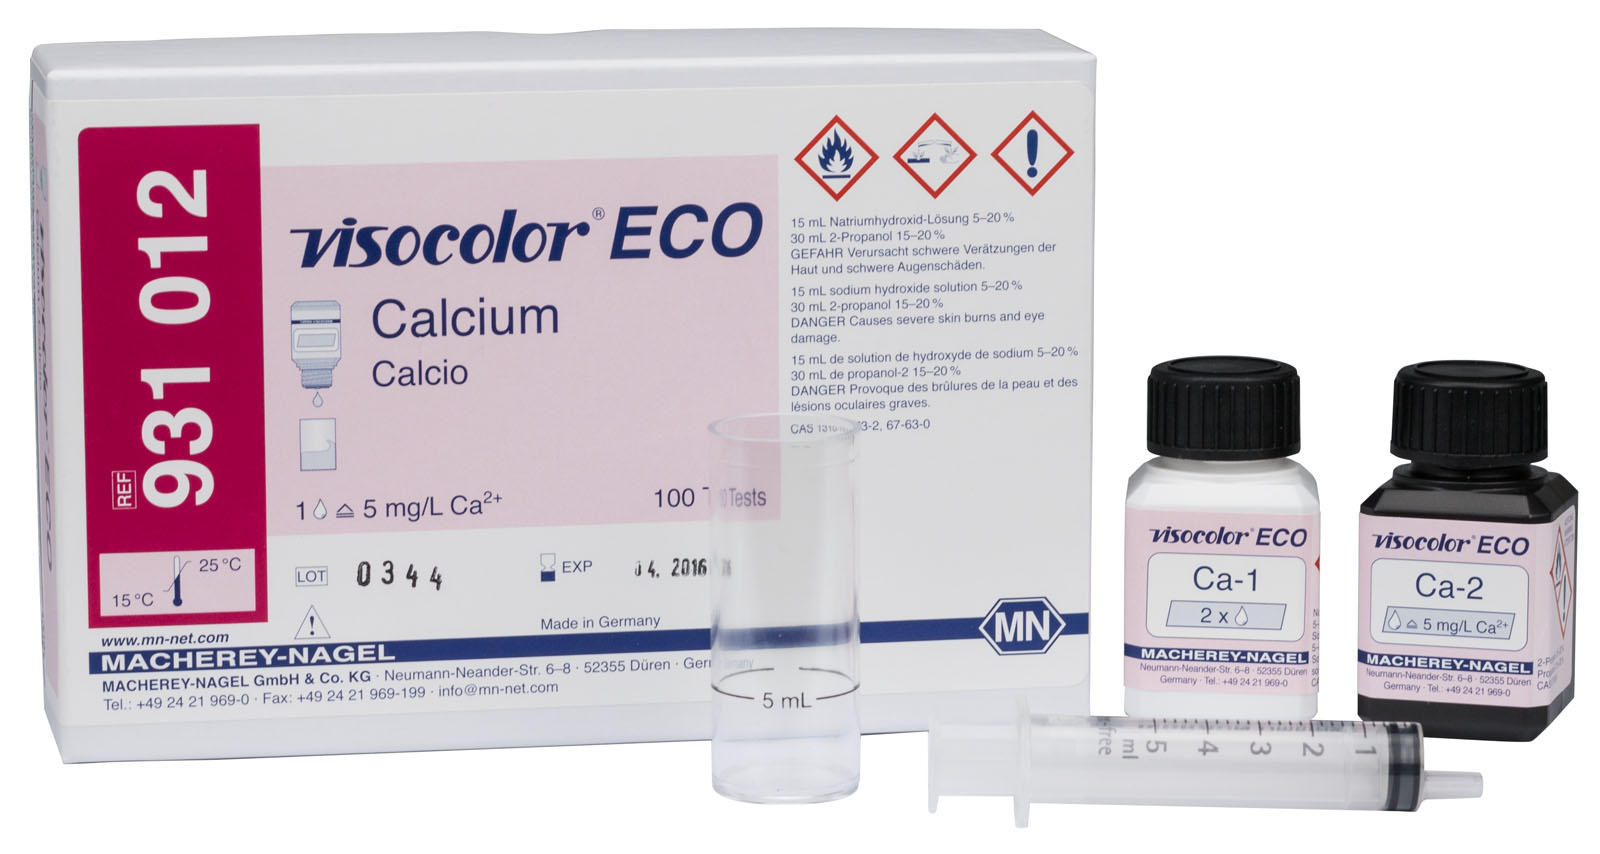 VISOCOLOR® ECO Calcium Test Kit